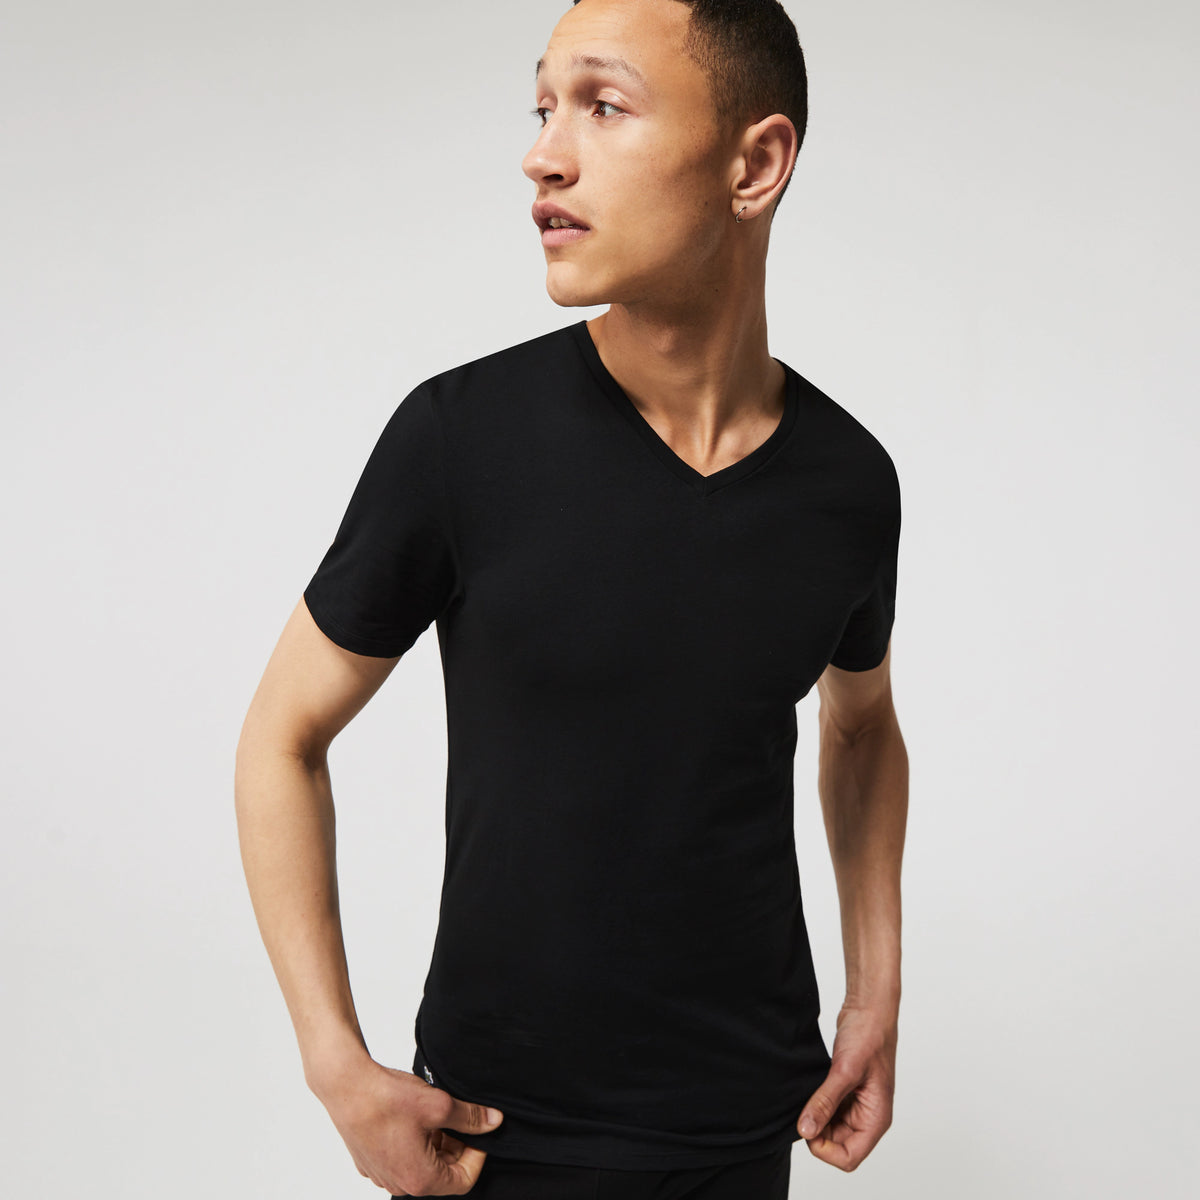 Men's 3 Pack of Plain Regular  V-neck T-shirts - Black